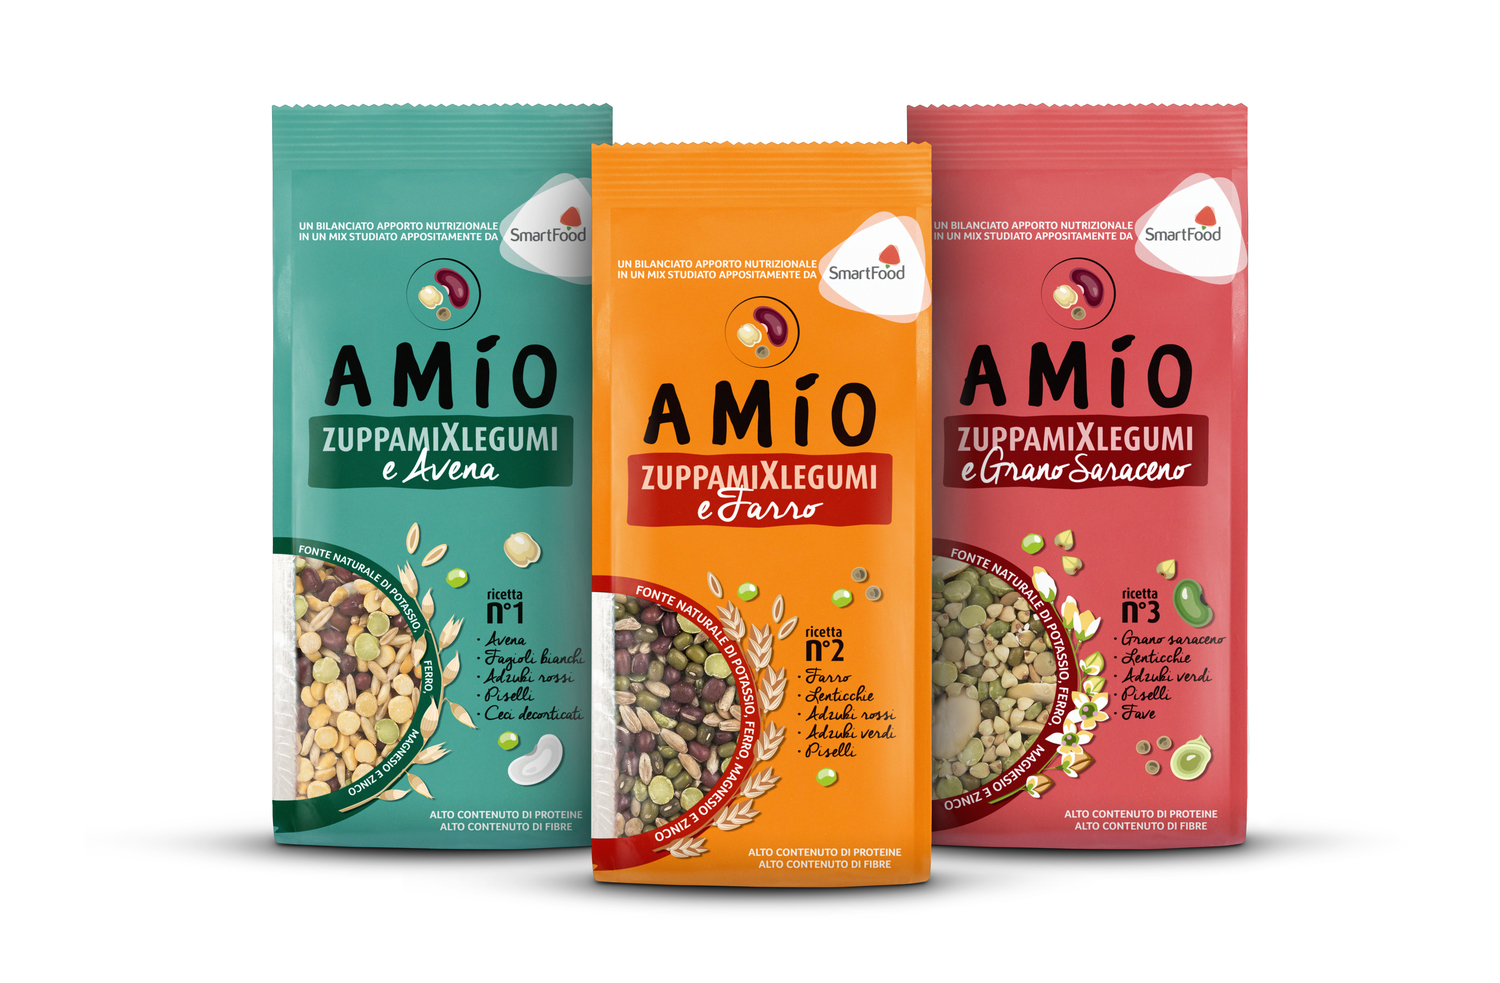 AMÍO lancia ZuppamiXlegumi, la nuova linea pensata per un’alimentazione sana, equilibrata e ricca di gusto